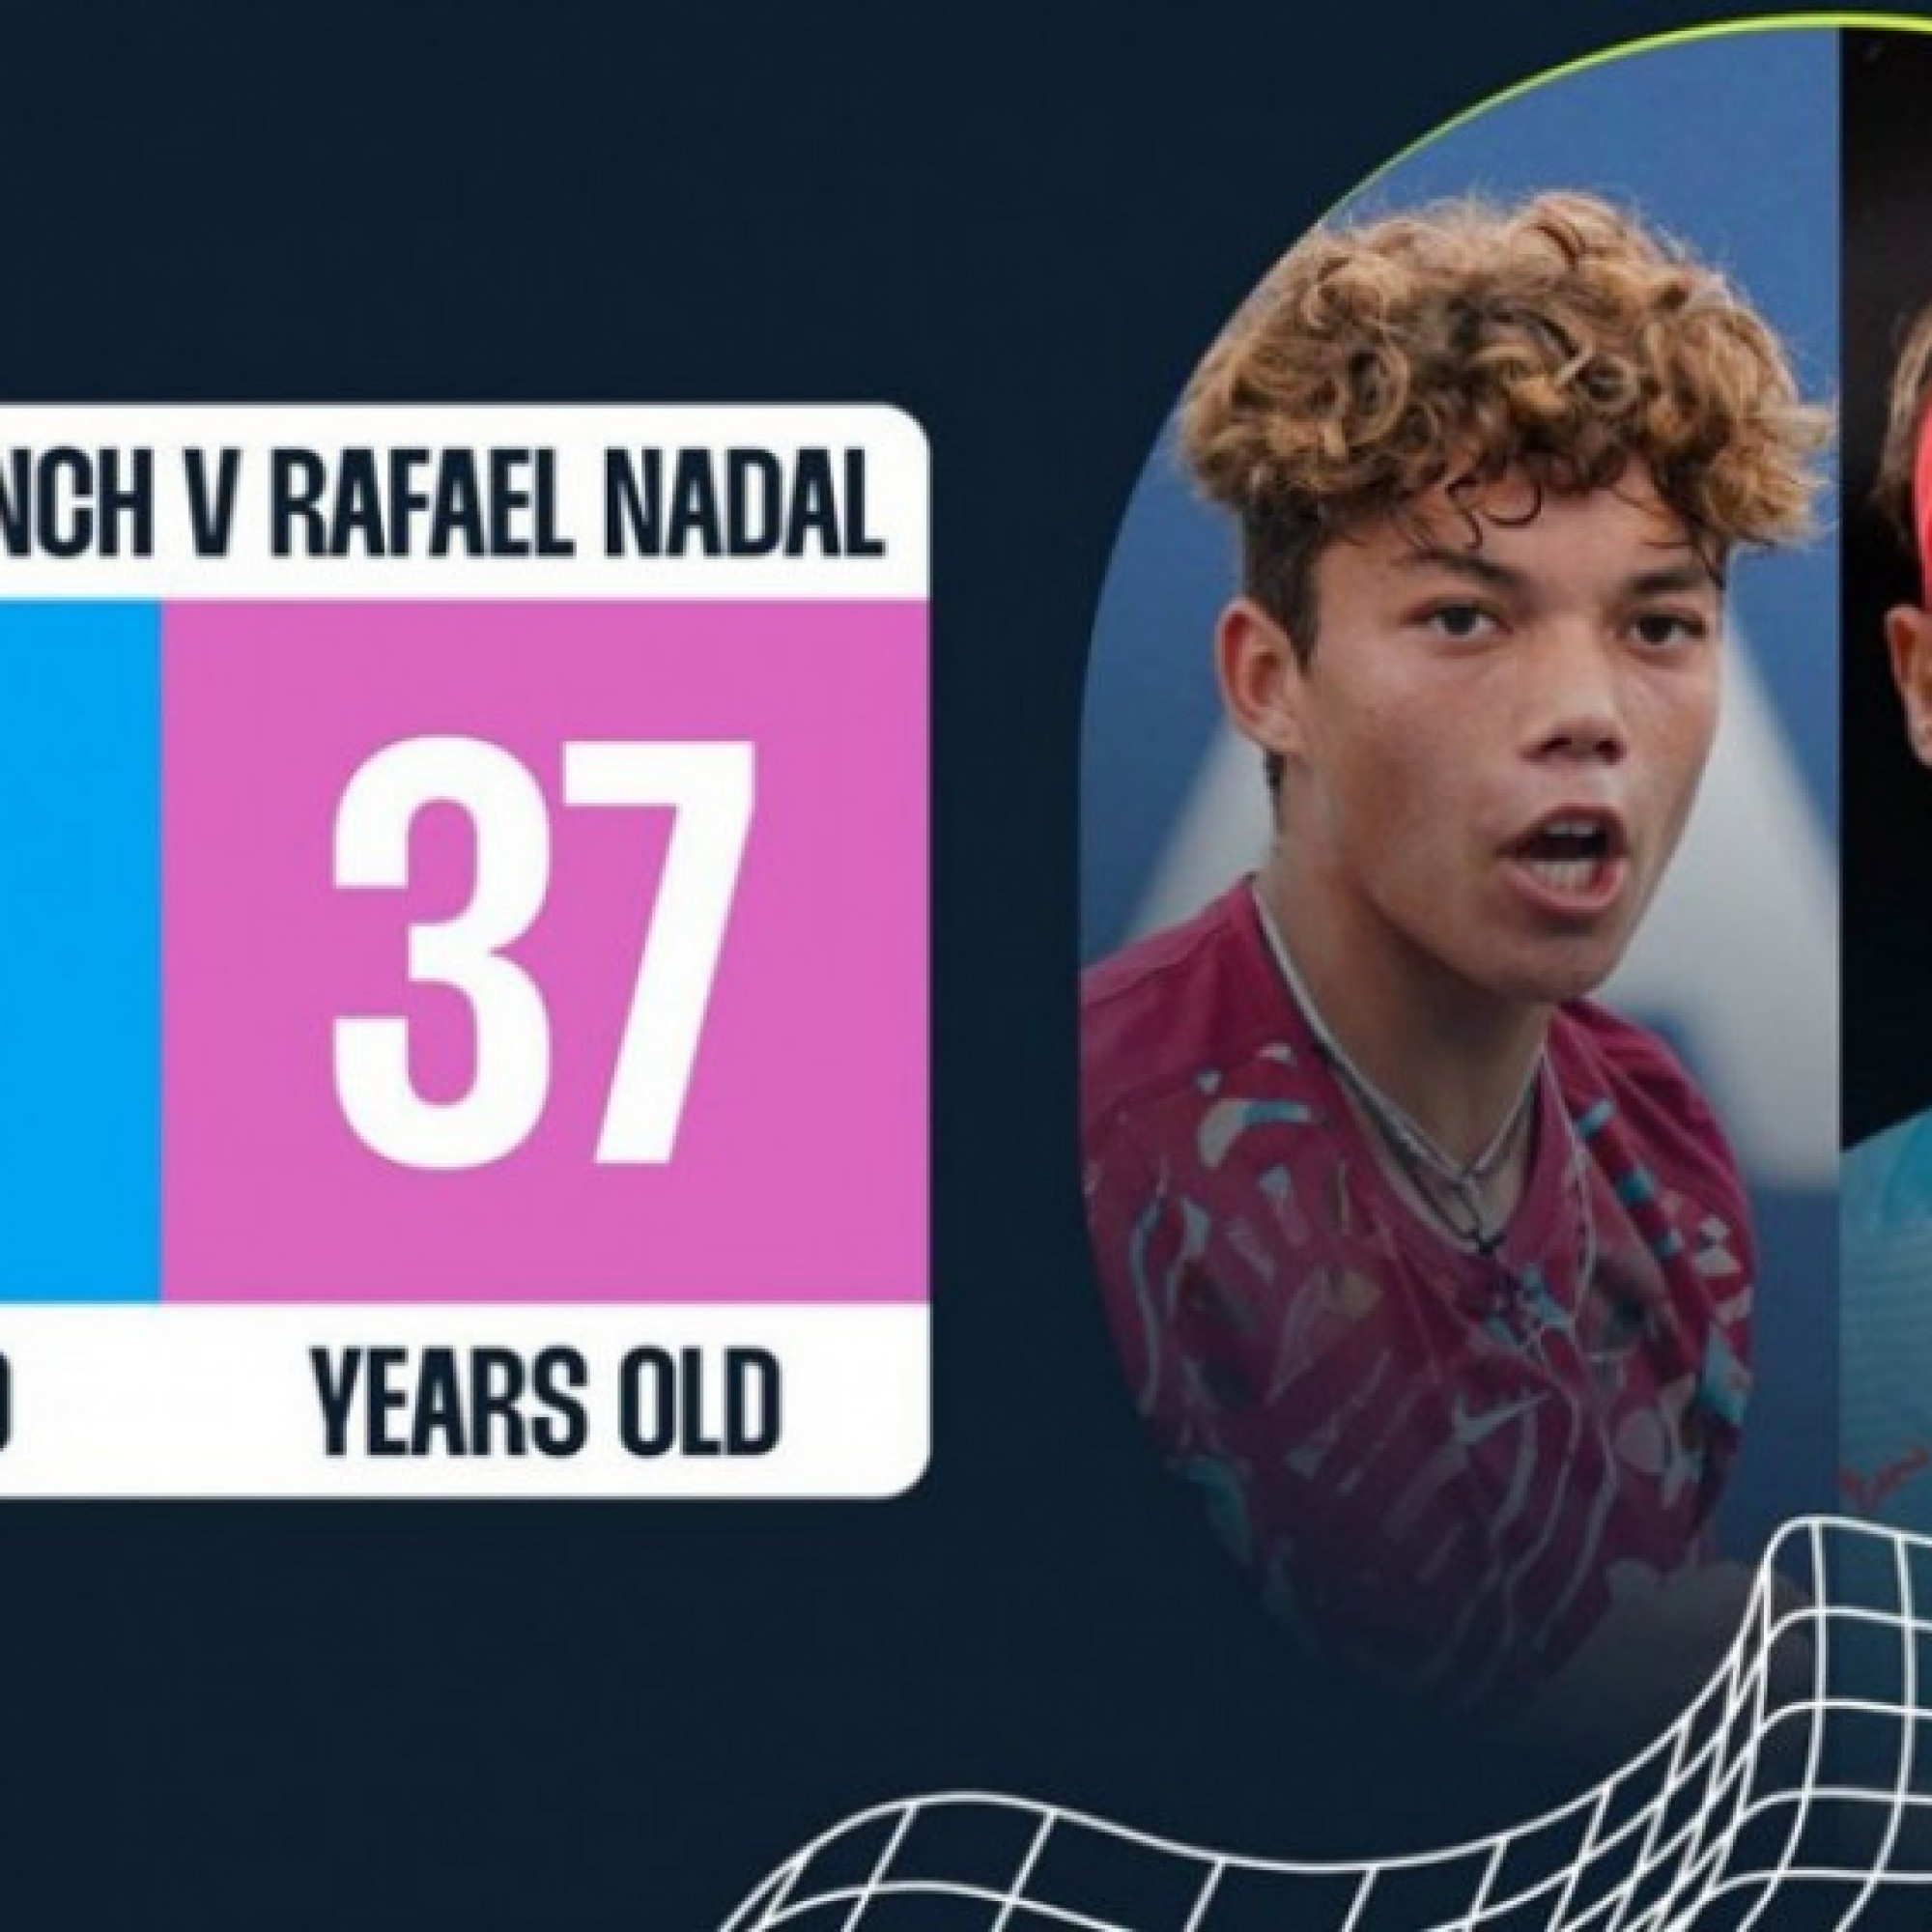  - Trực tiếp tennis Madrid Open ngày 2: Khó lường cặp đấu "chú - cháu" Nadal & Blanch